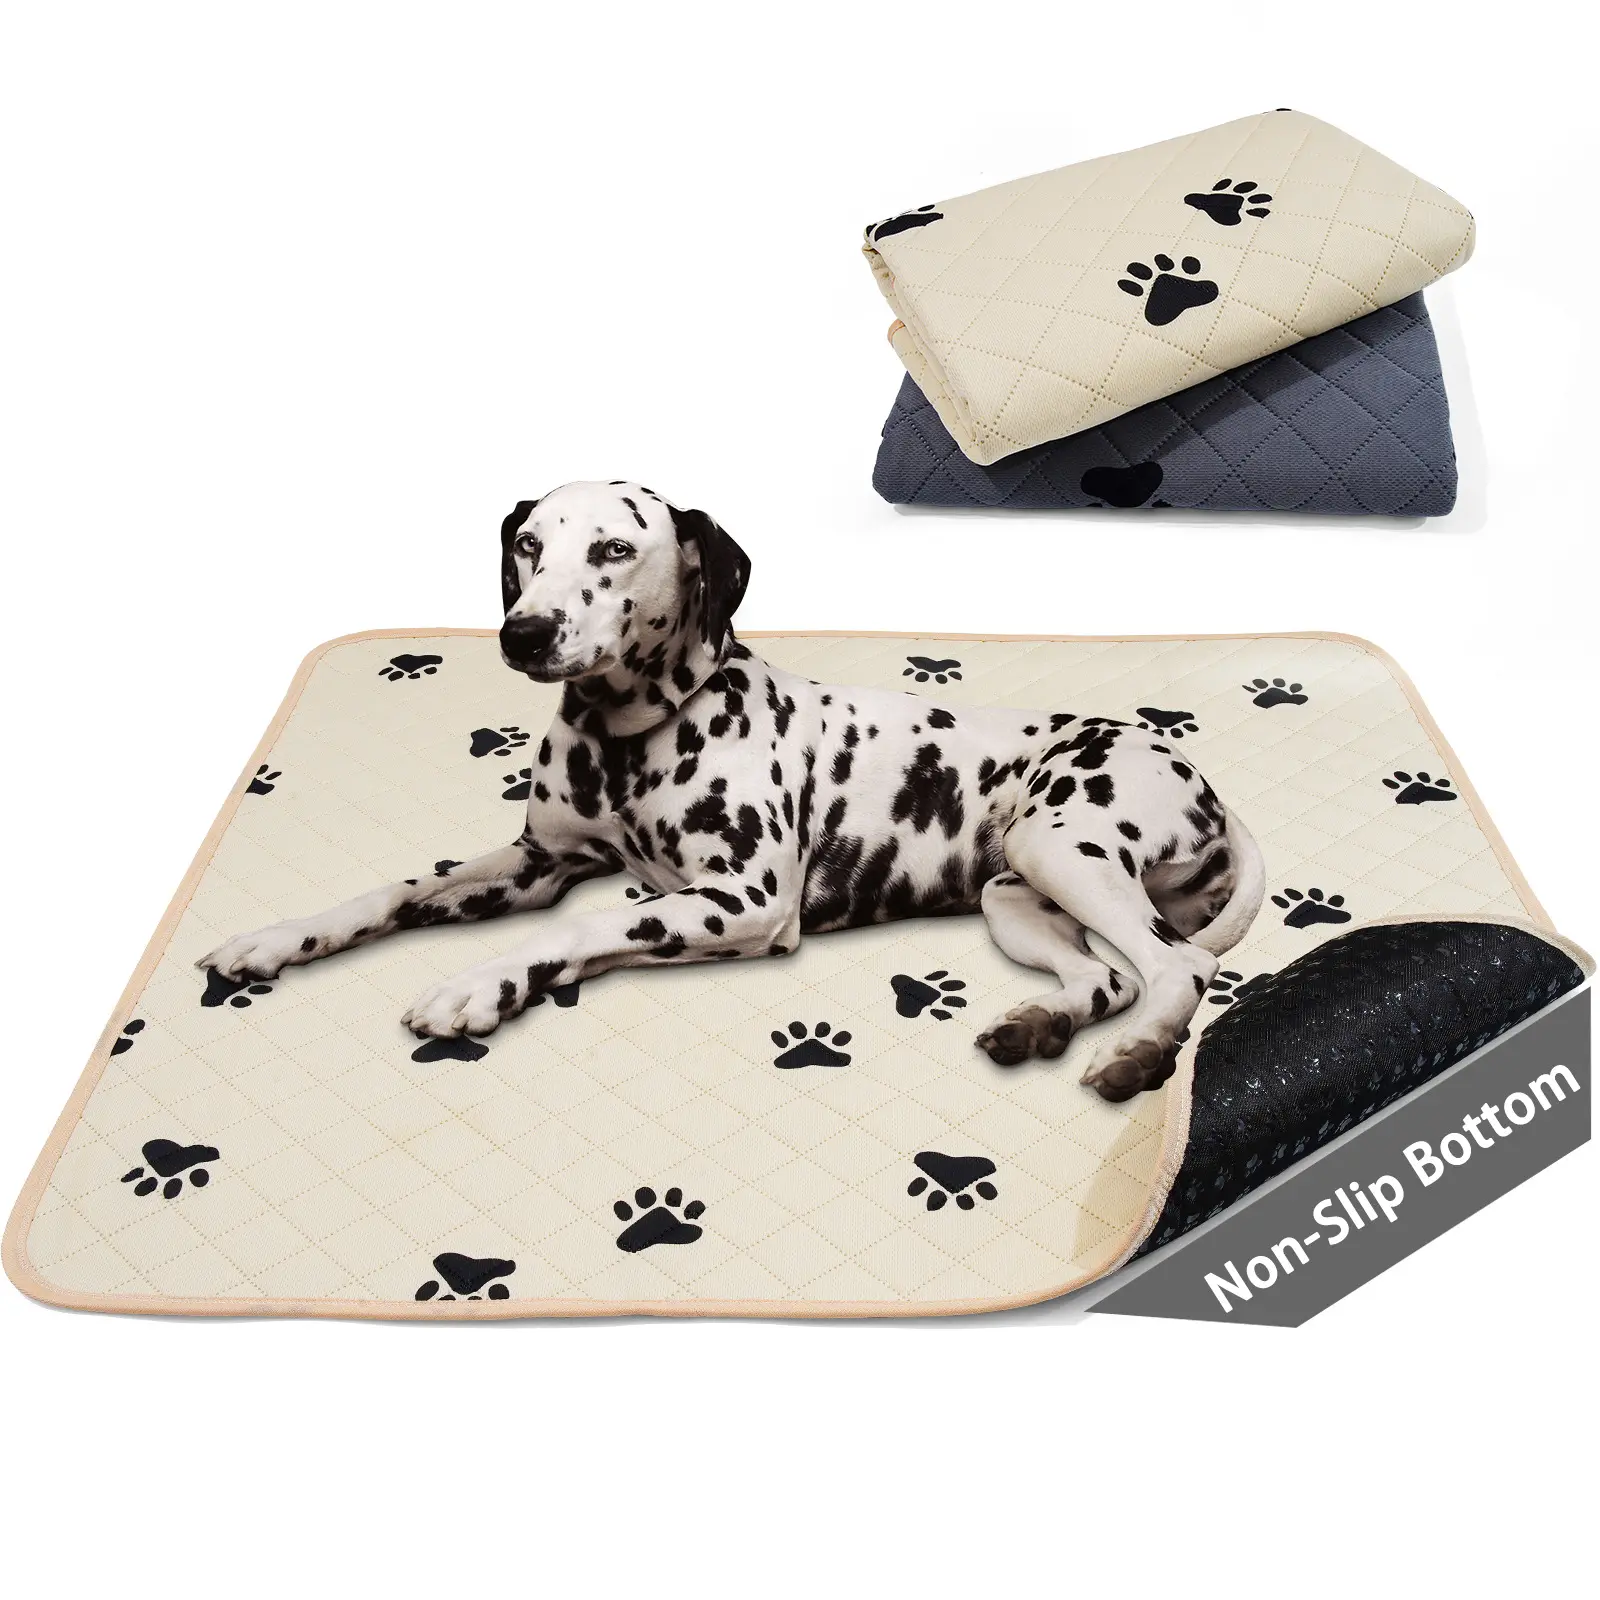 Coperta impermeabile per cane morbido Plush plaid protegge divano sedie letto auto lavabile coperta per animali domestici